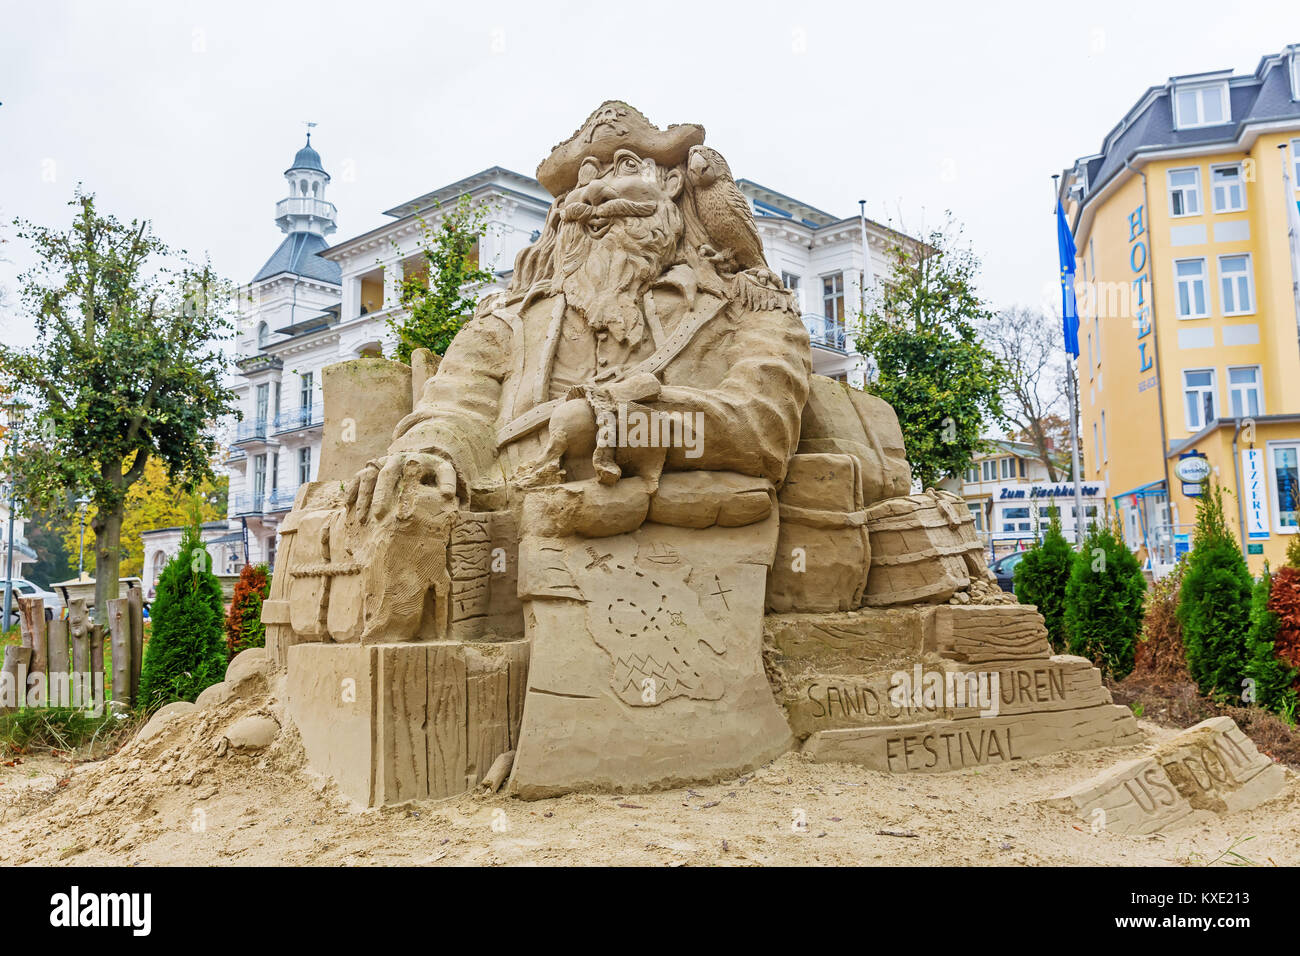 Usedom, Allemagne - 24 octobre 2017 : sculptures de sable à Heringsdorf, Usedom. Cette sculpture dans la ville fait partie de l'assemblée annuelle de la sculpture de sable festiv Banque D'Images